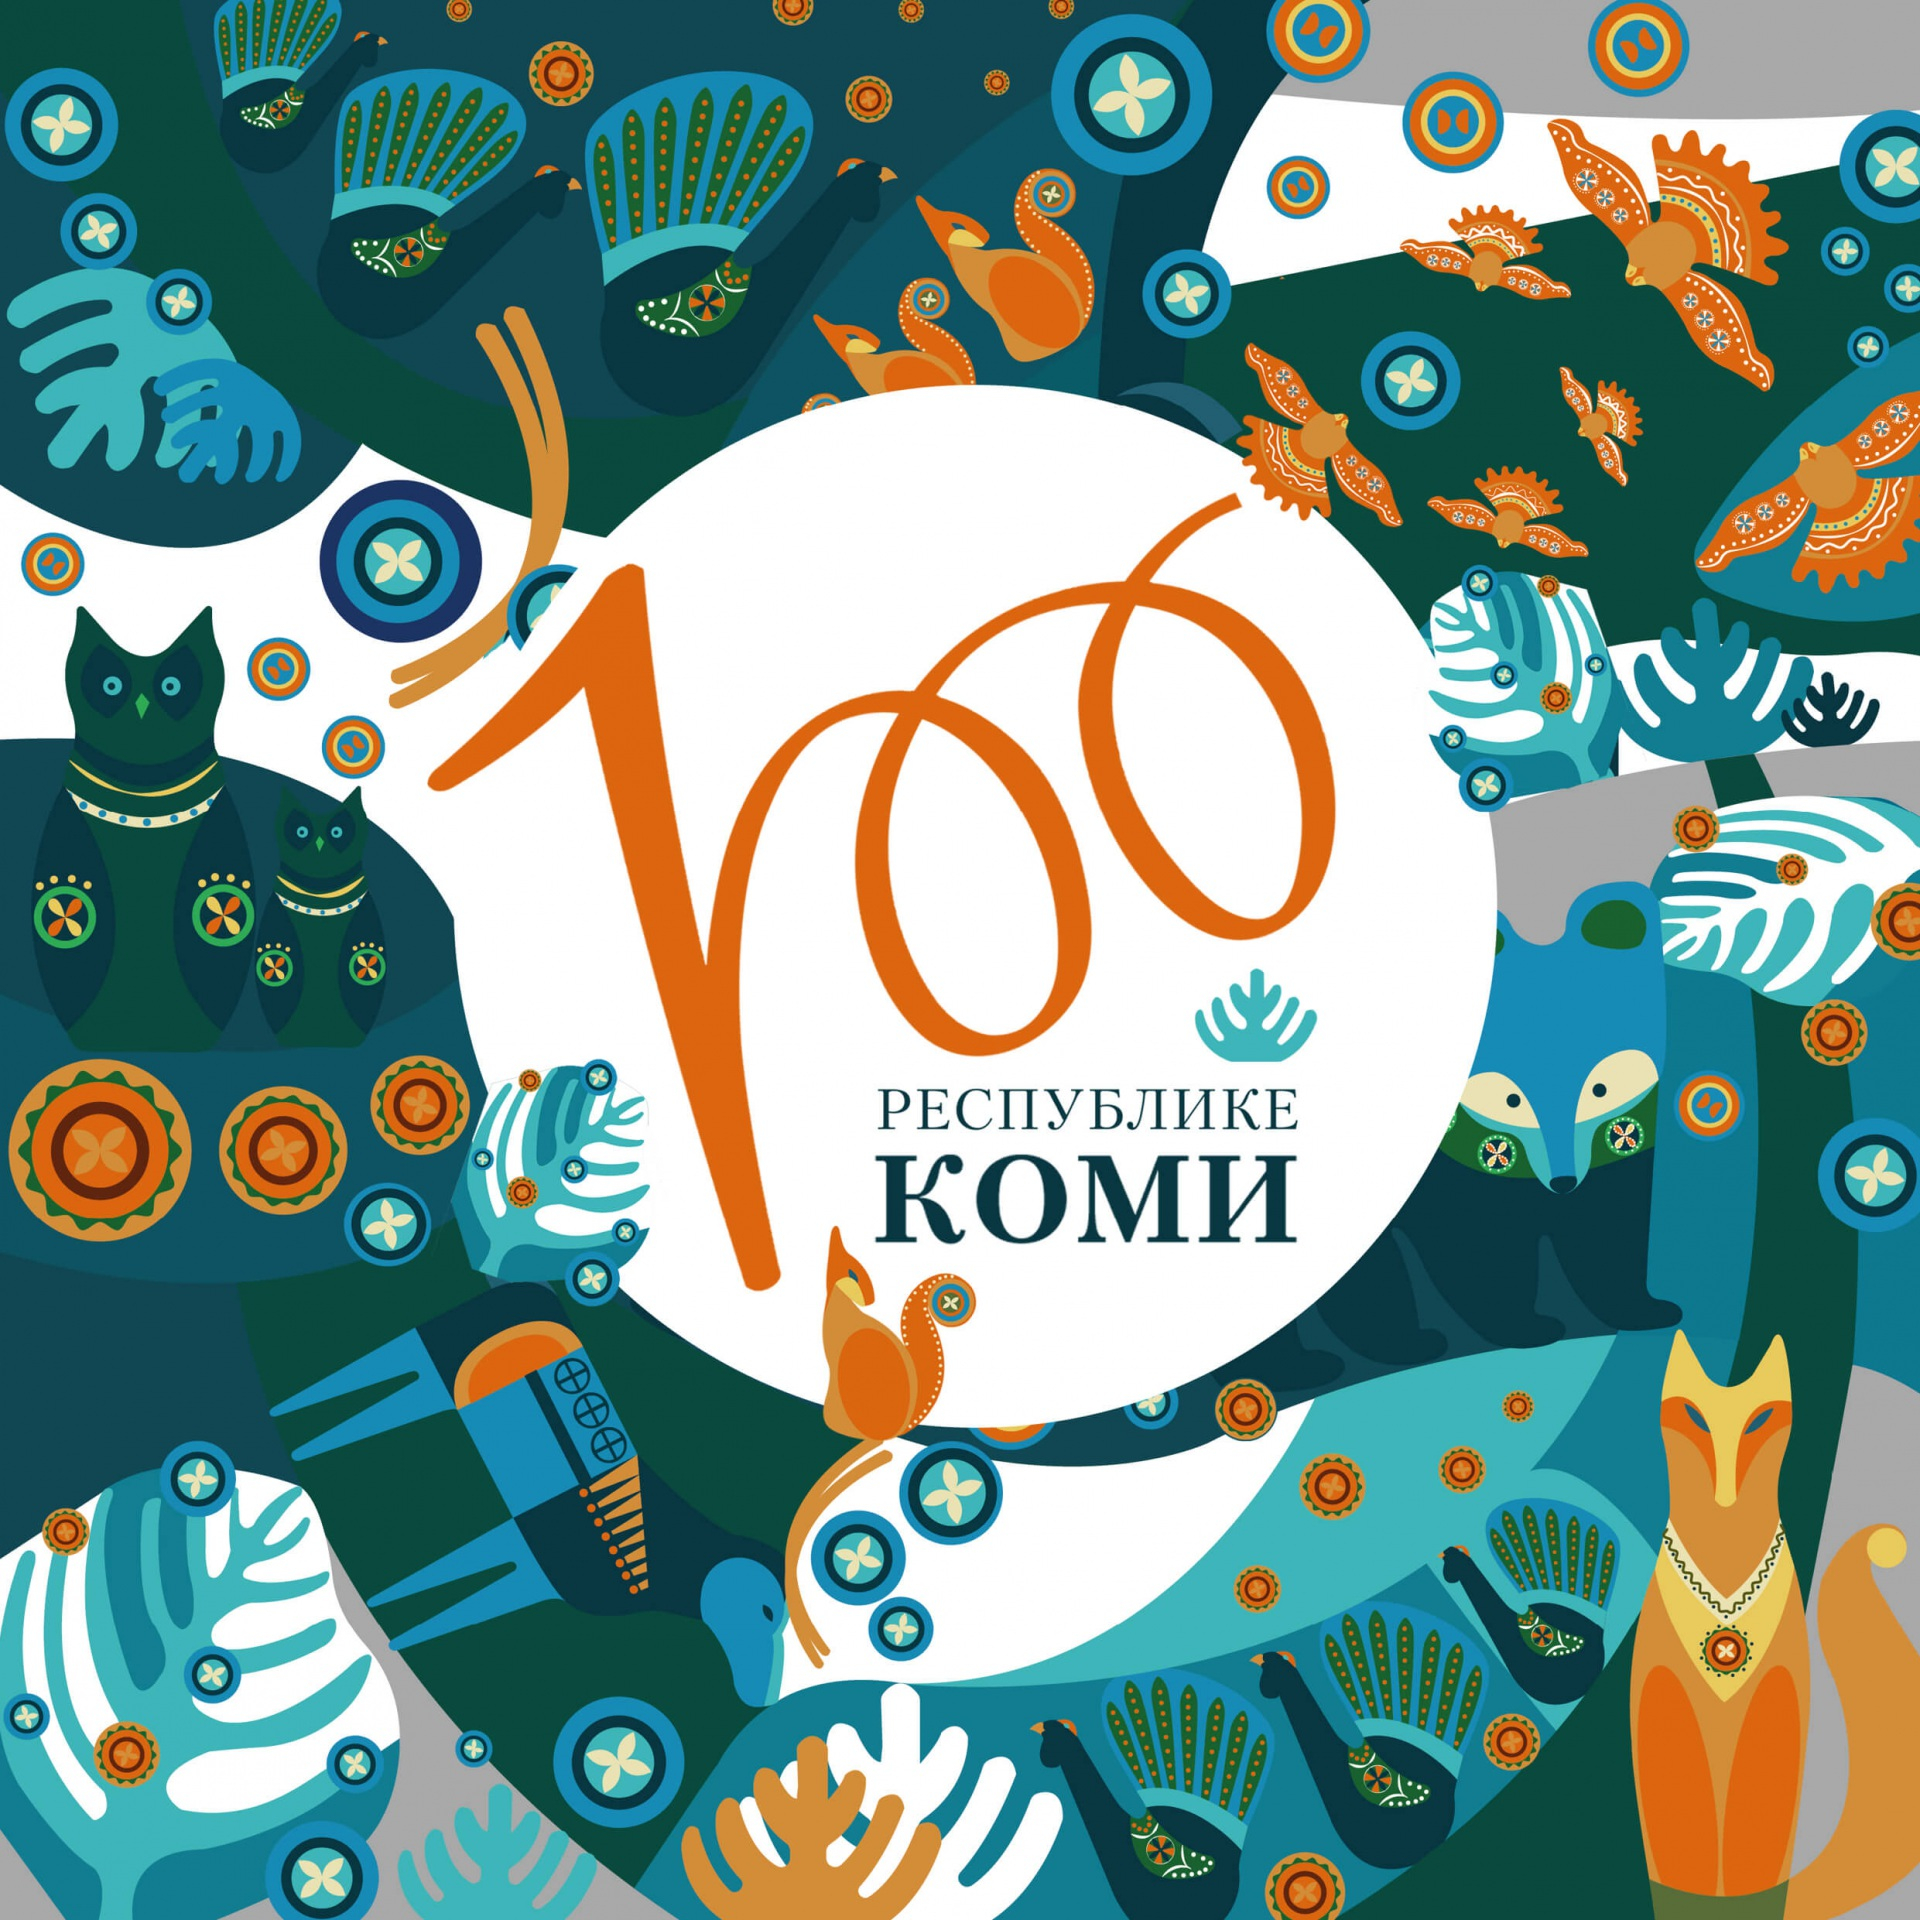 Как преобразился Сосногорск к 100-летию Коми?